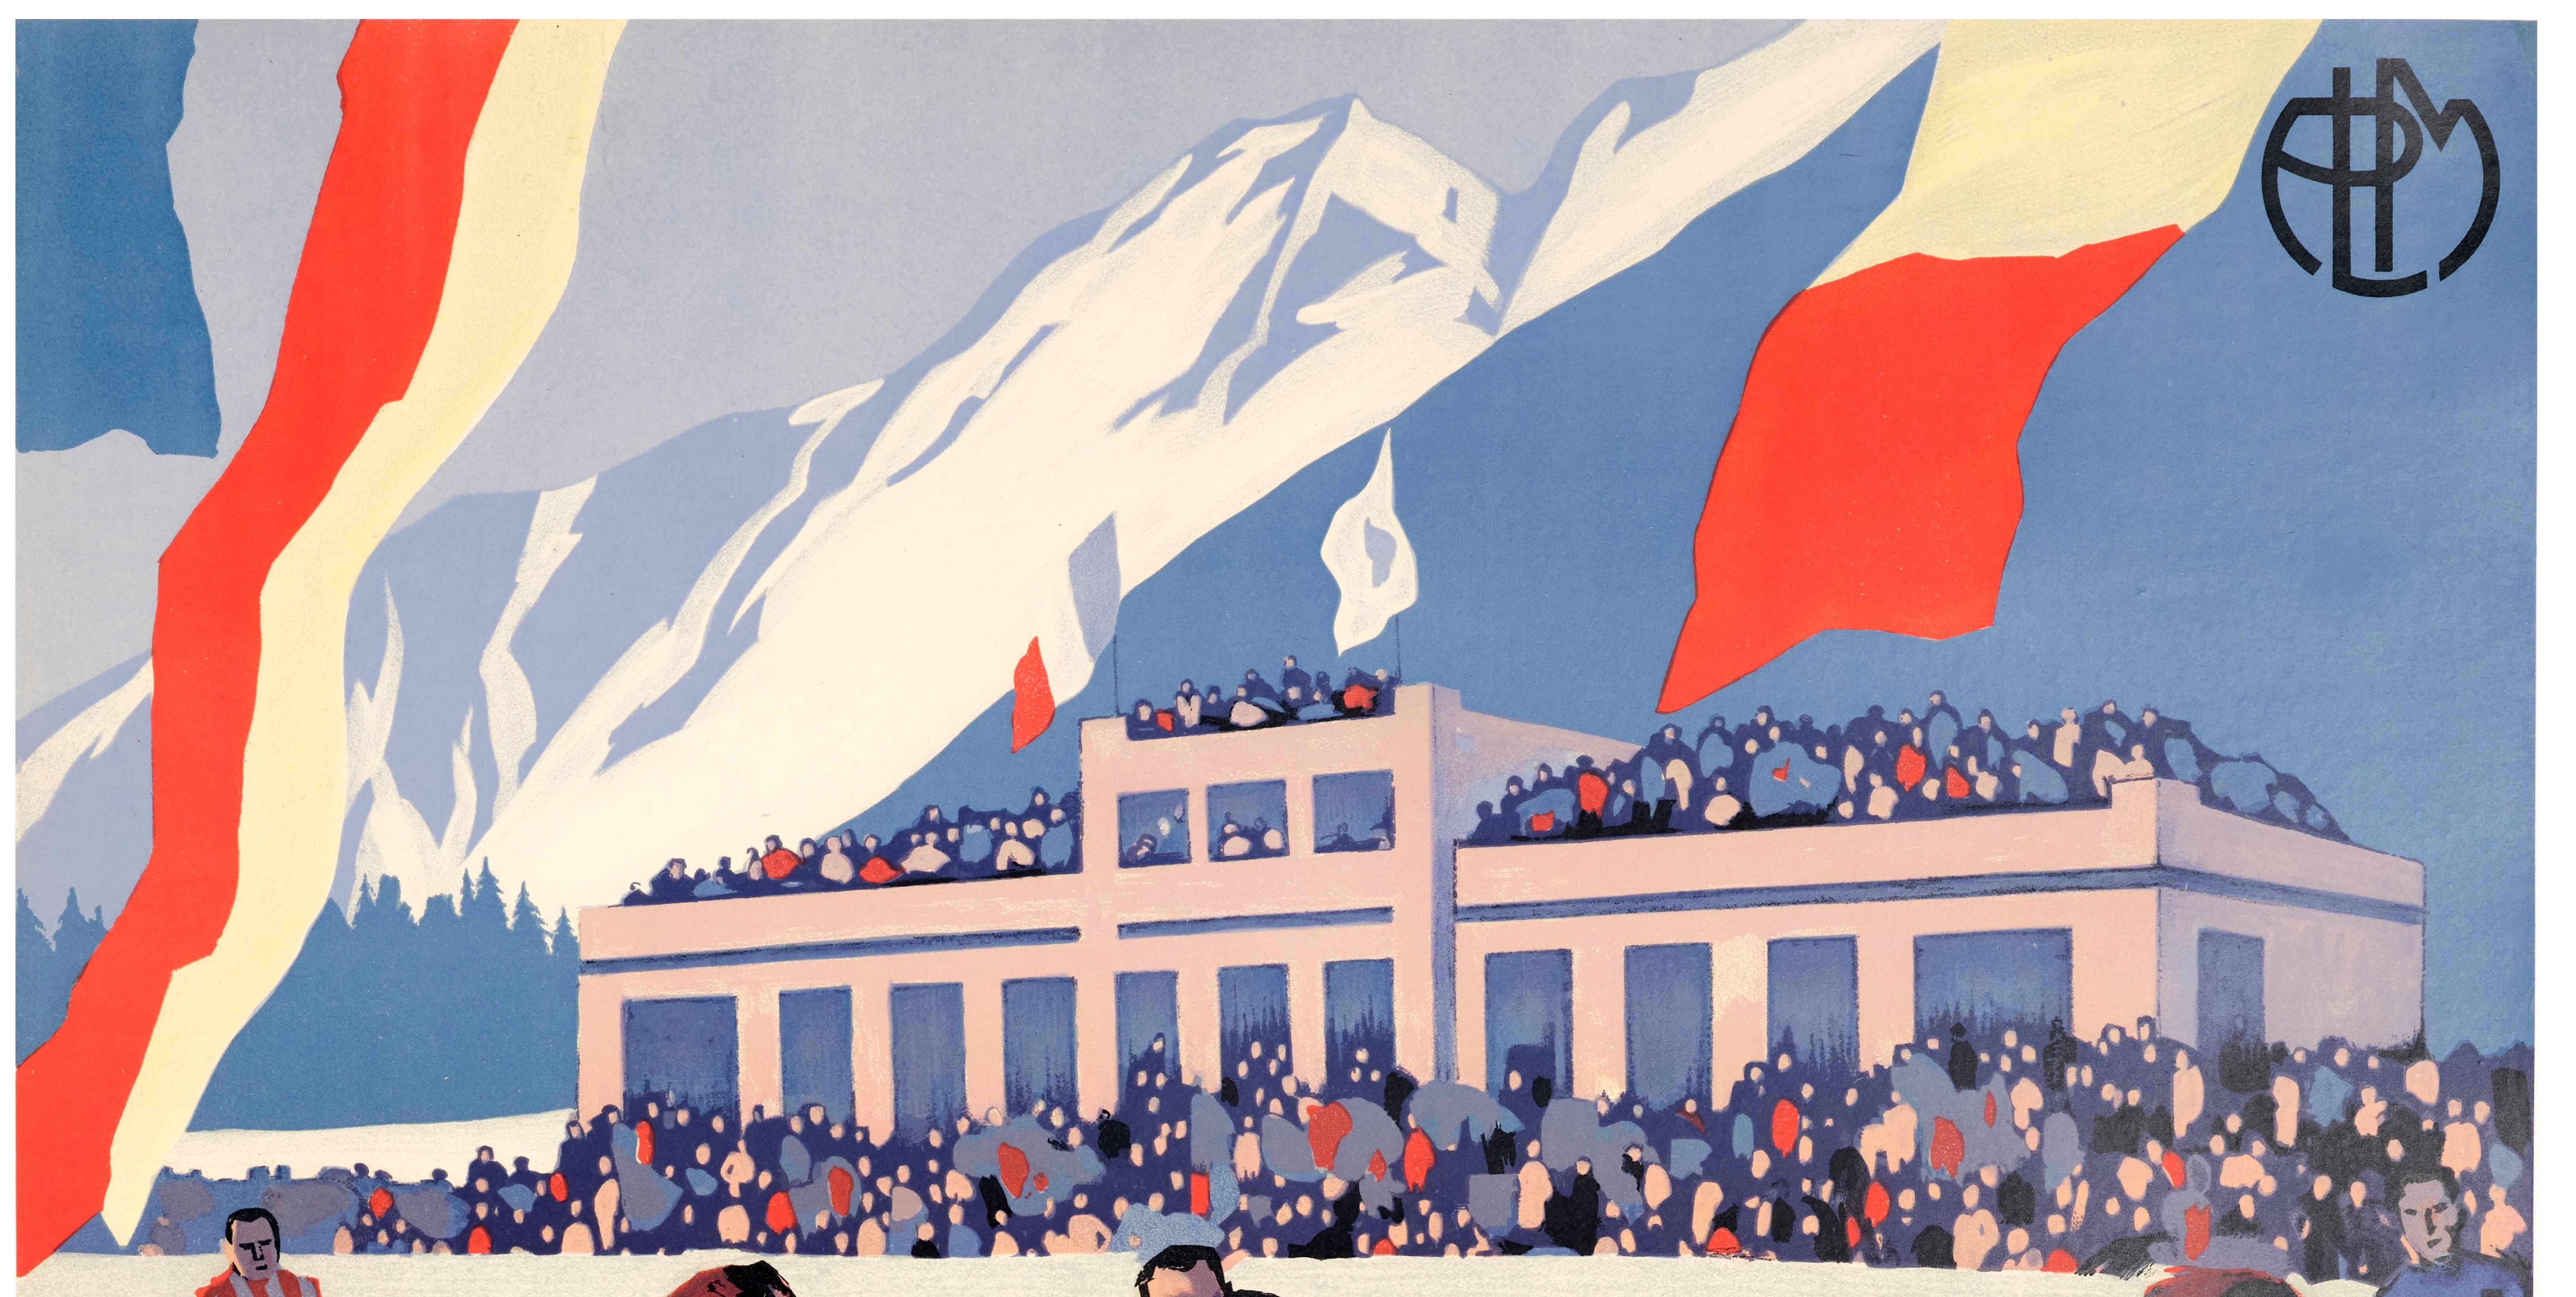 Affiche du P.L.A. réalisée par Roger Broders en 1930 pour le championnat du monde de hockey sur glace à Chamonix (Alpes).

Artistics : Roger Broders (1883-1953)
Titre : Chamonix - Mont-Blanc - Tous les sports d'hiver
Date : 1930
Taille : 24.8 x 39.8